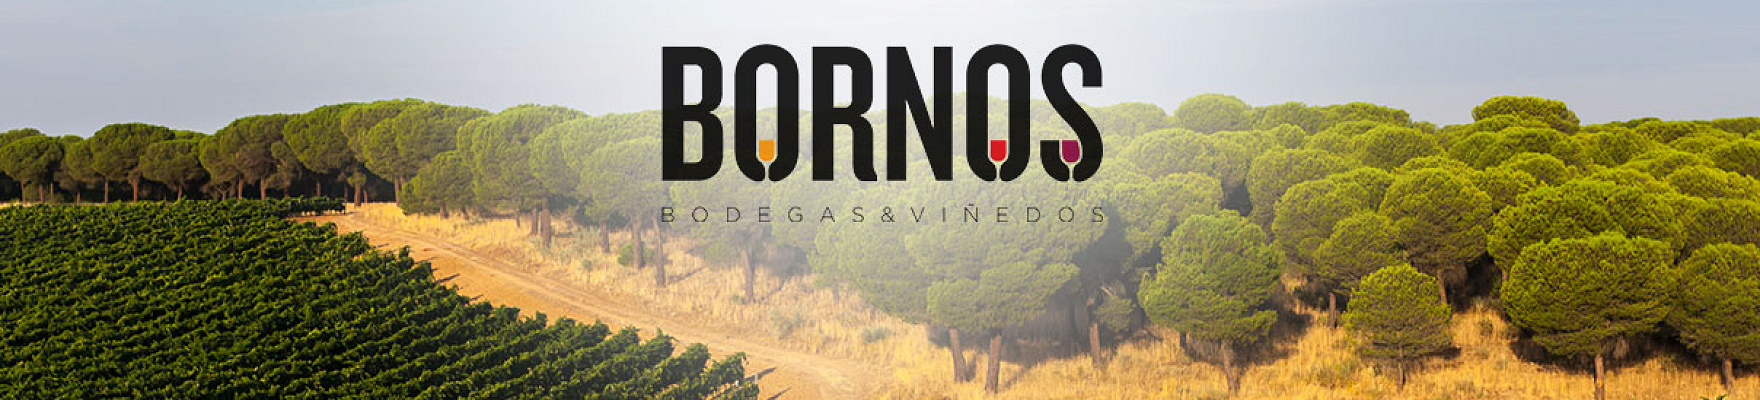 Bornos Bodegas y Viñedos